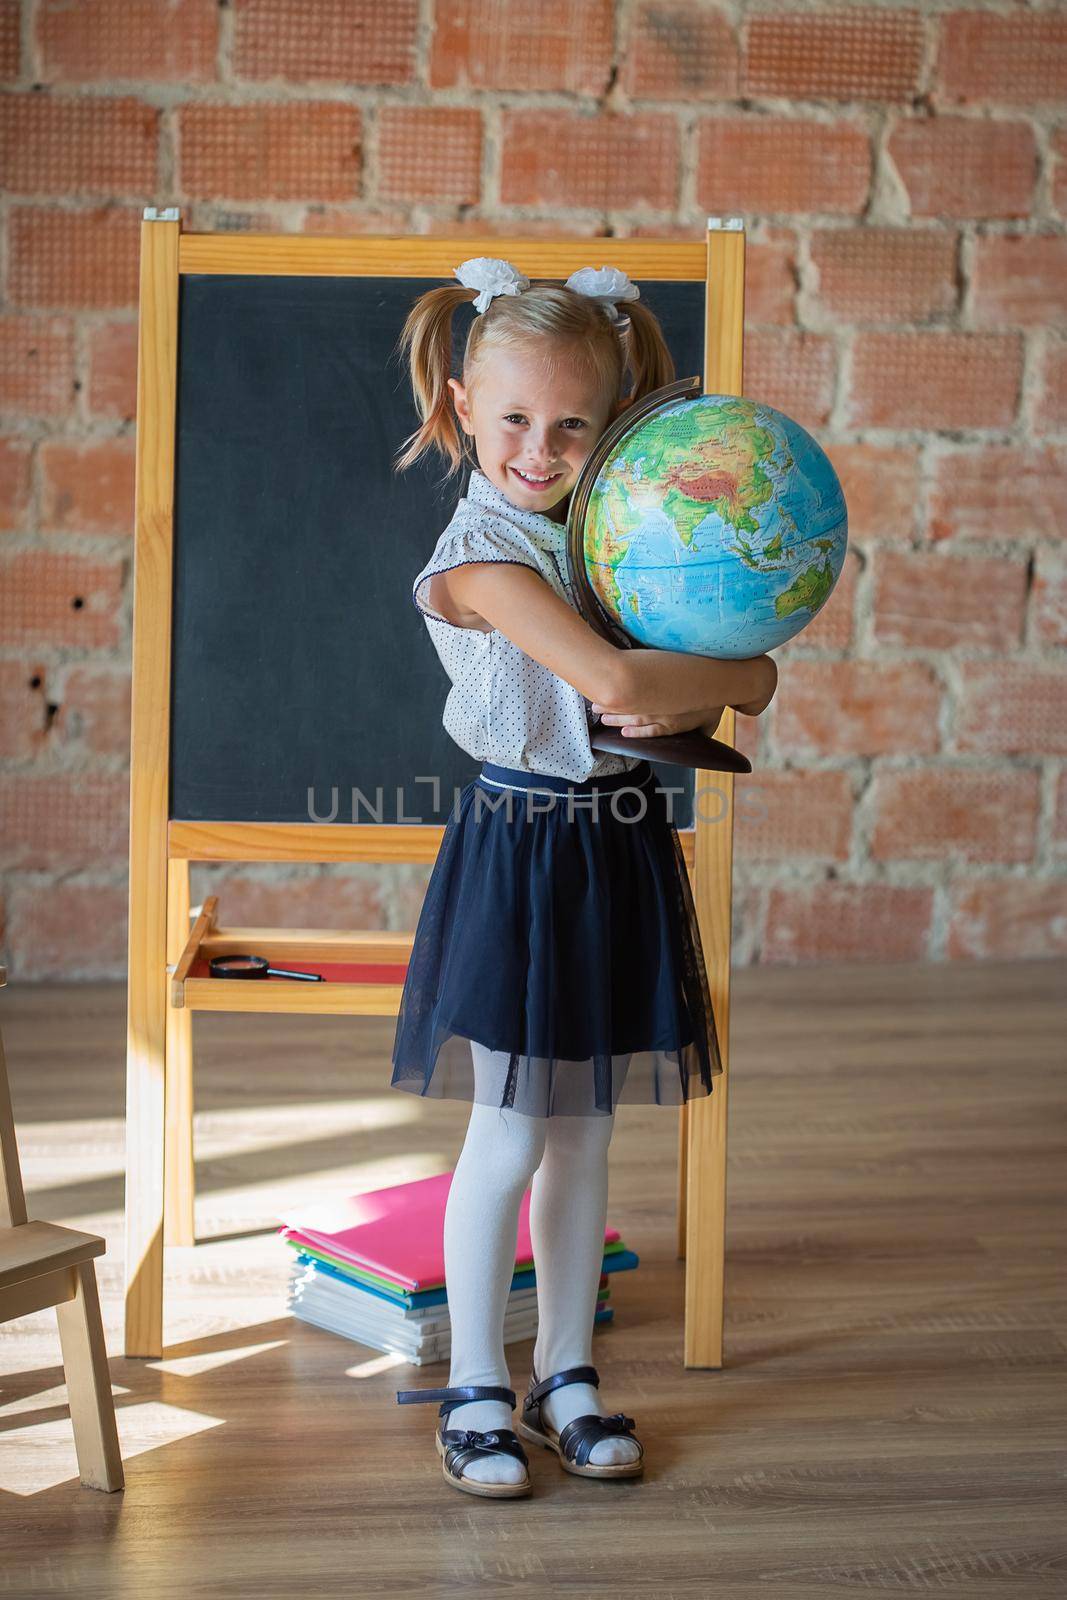 Portrait of caucasian schoolgirl standing in front of chalkboard with globe in her hands, back to school concept